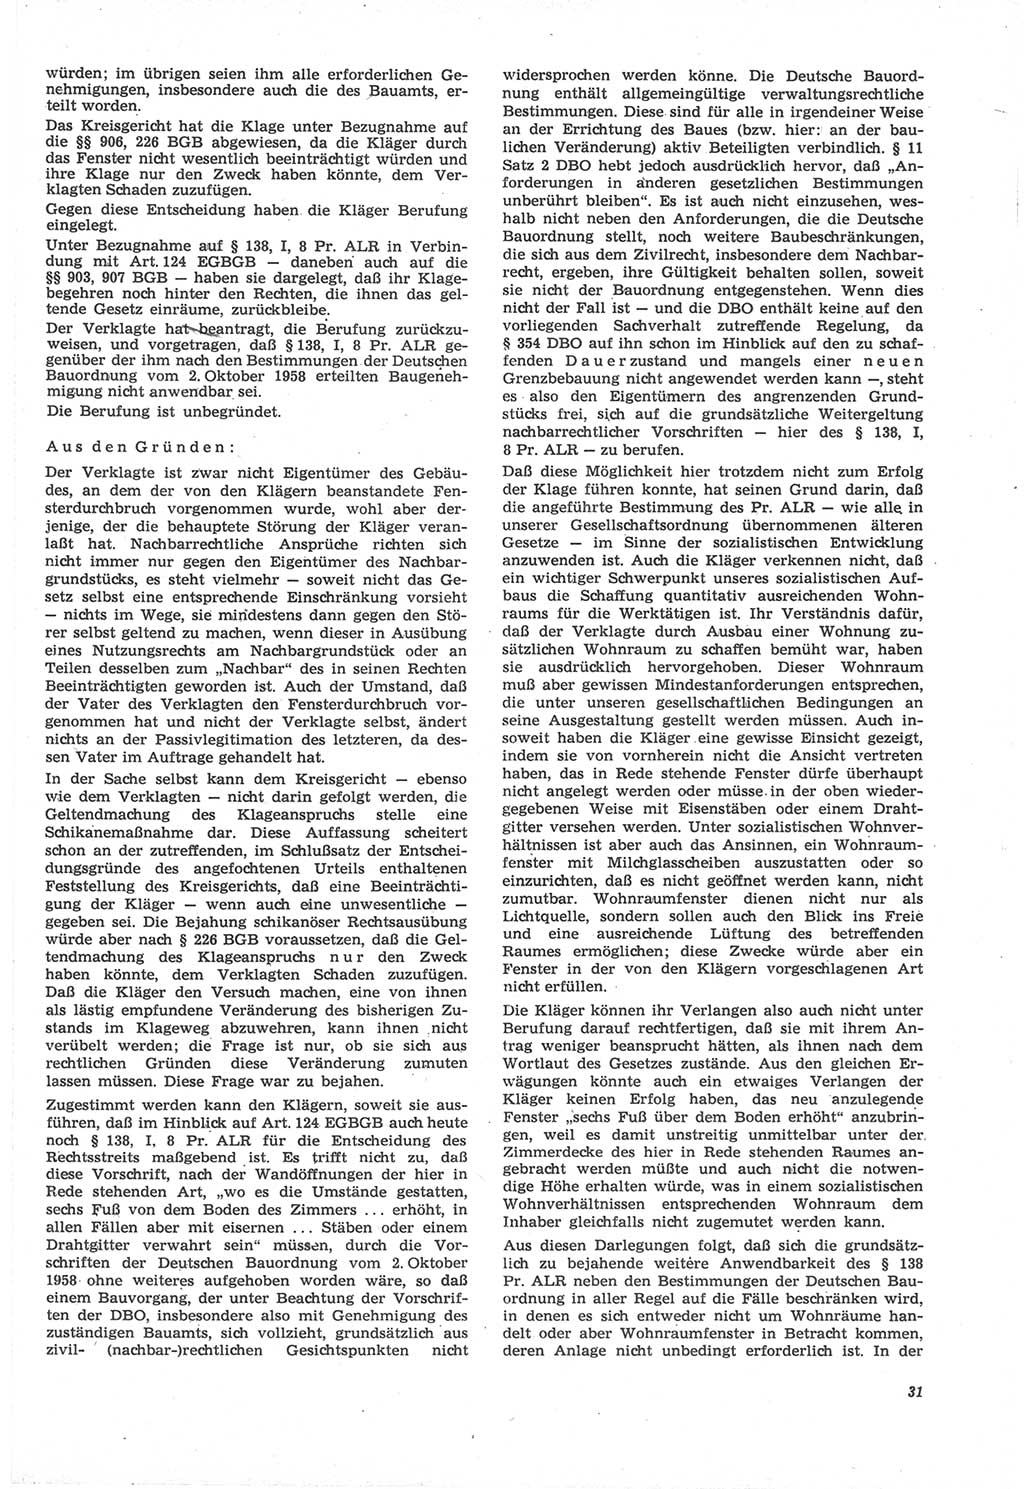 Neue Justiz (NJ), Zeitschrift für Recht und Rechtswissenschaft [Deutsche Demokratische Republik (DDR)], 22. Jahrgang 1968, Seite 31 (NJ DDR 1968, S. 31)